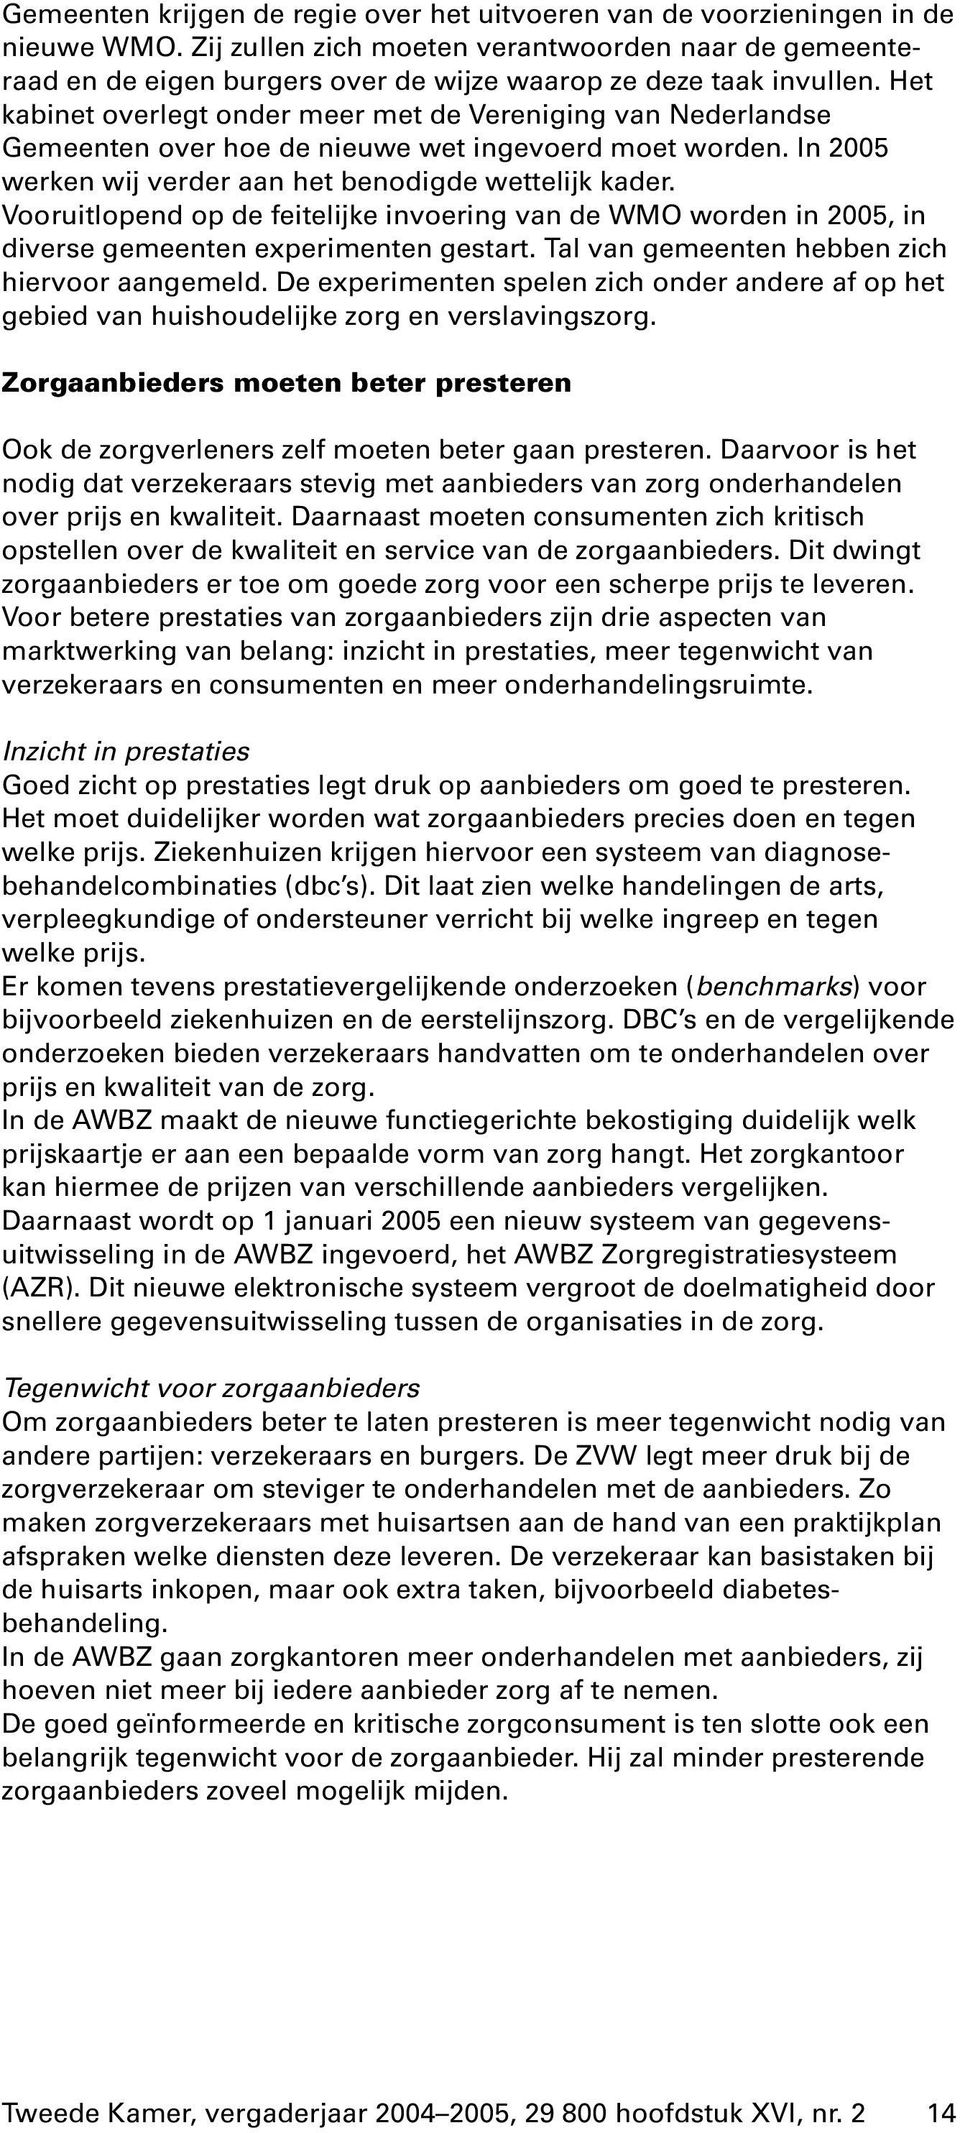 Het kabinet overlegt onder meer met de Vereniging van Nederlandse Gemeenten over hoe de nieuwe wet ingevoerd moet worden. In 2005 werken wij verder aan het benodigde wettelijk kader.